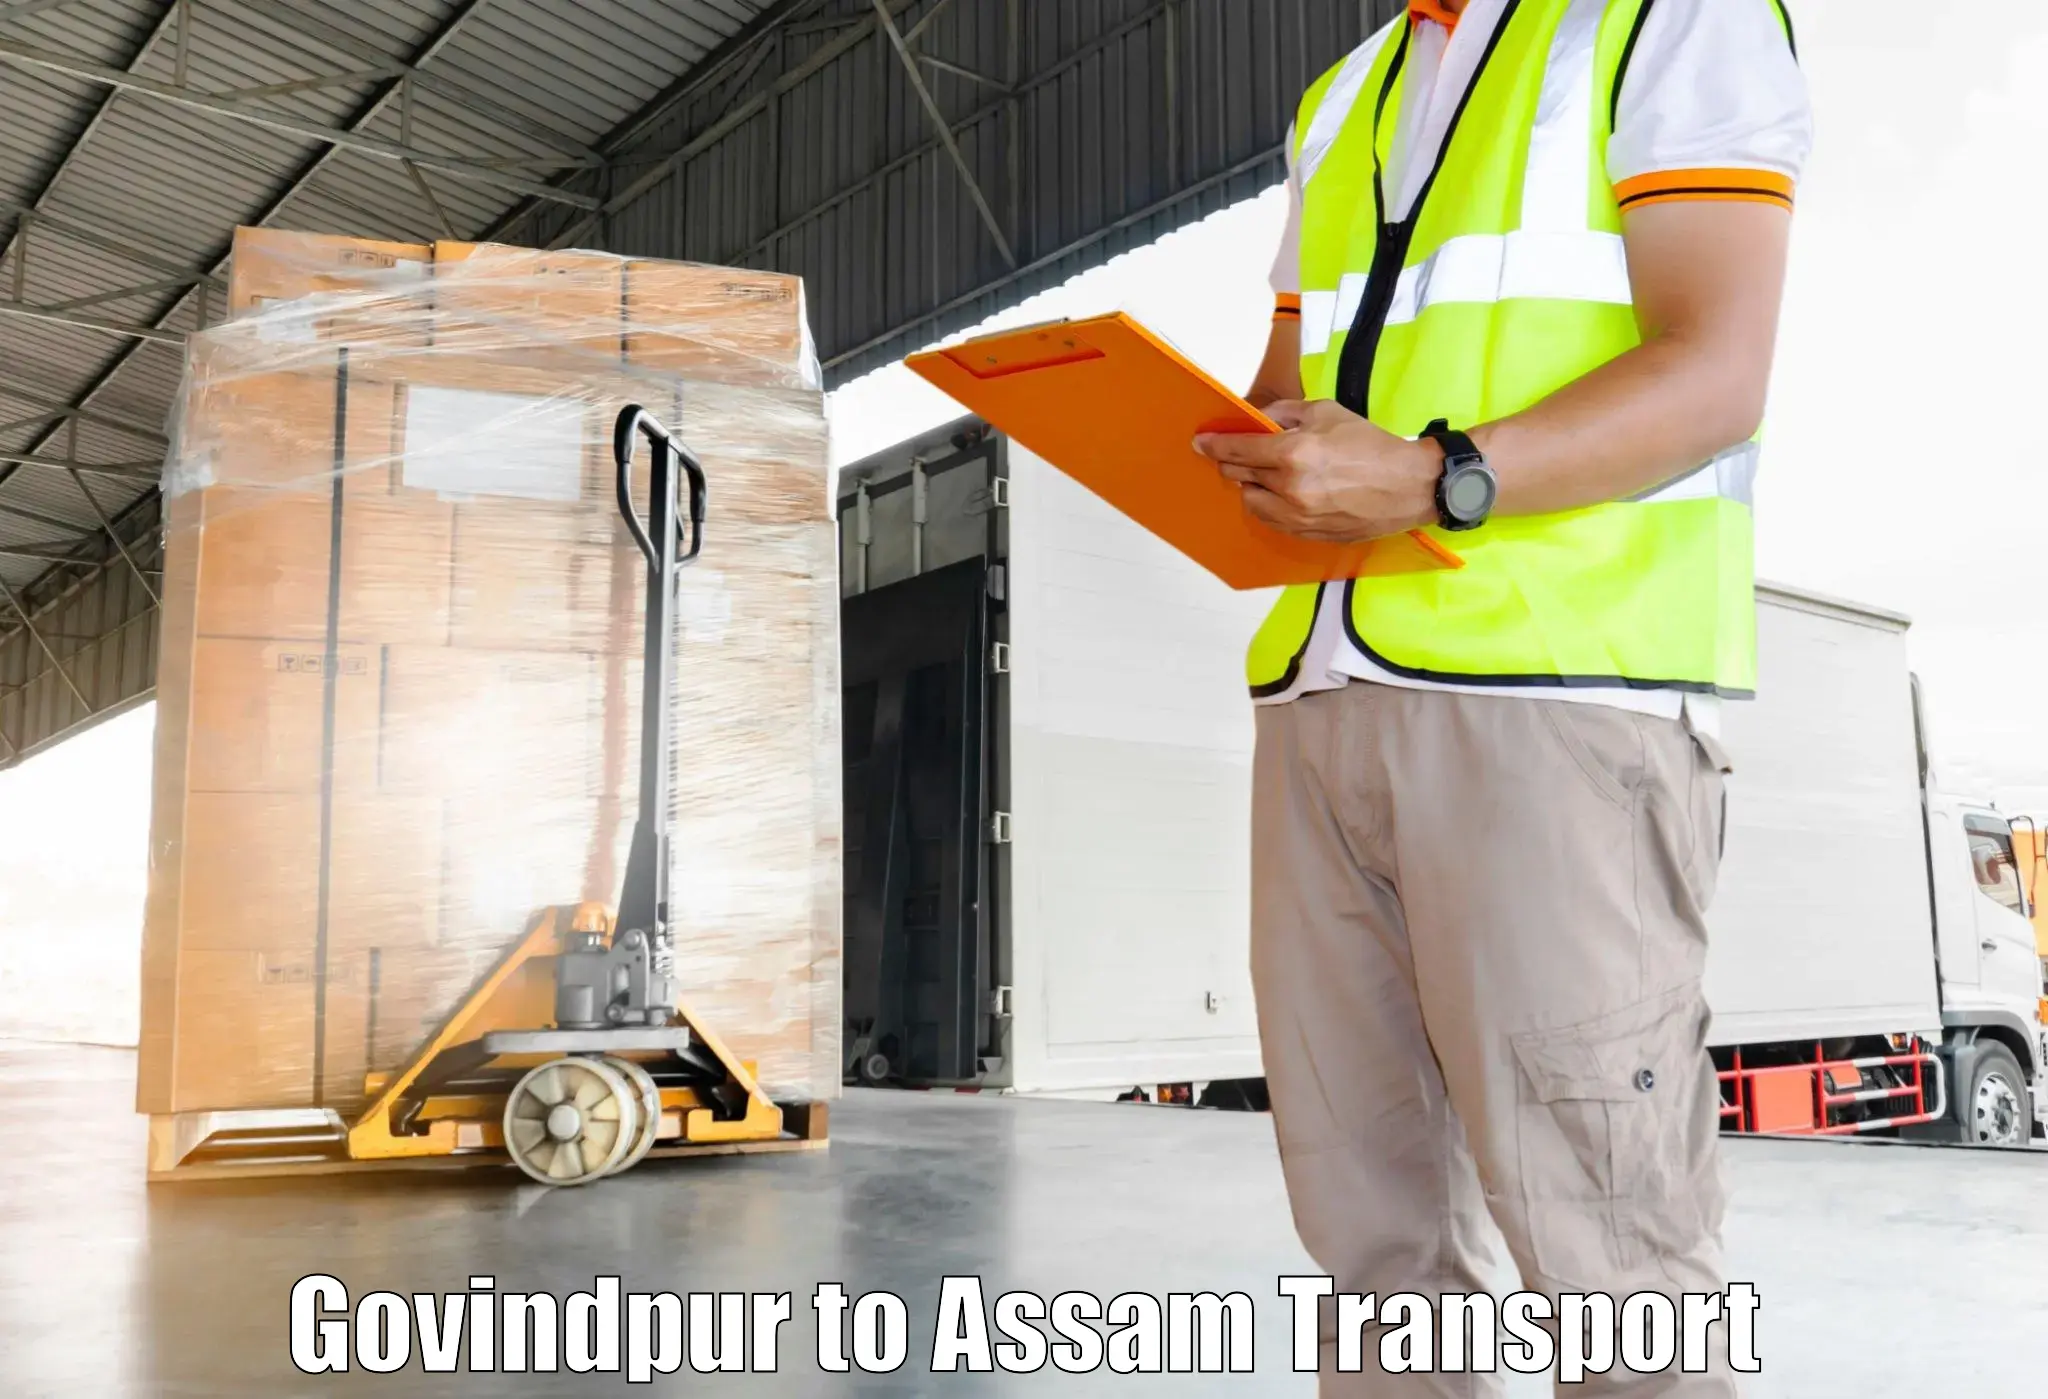 Online transport booking Govindpur to Golaghat